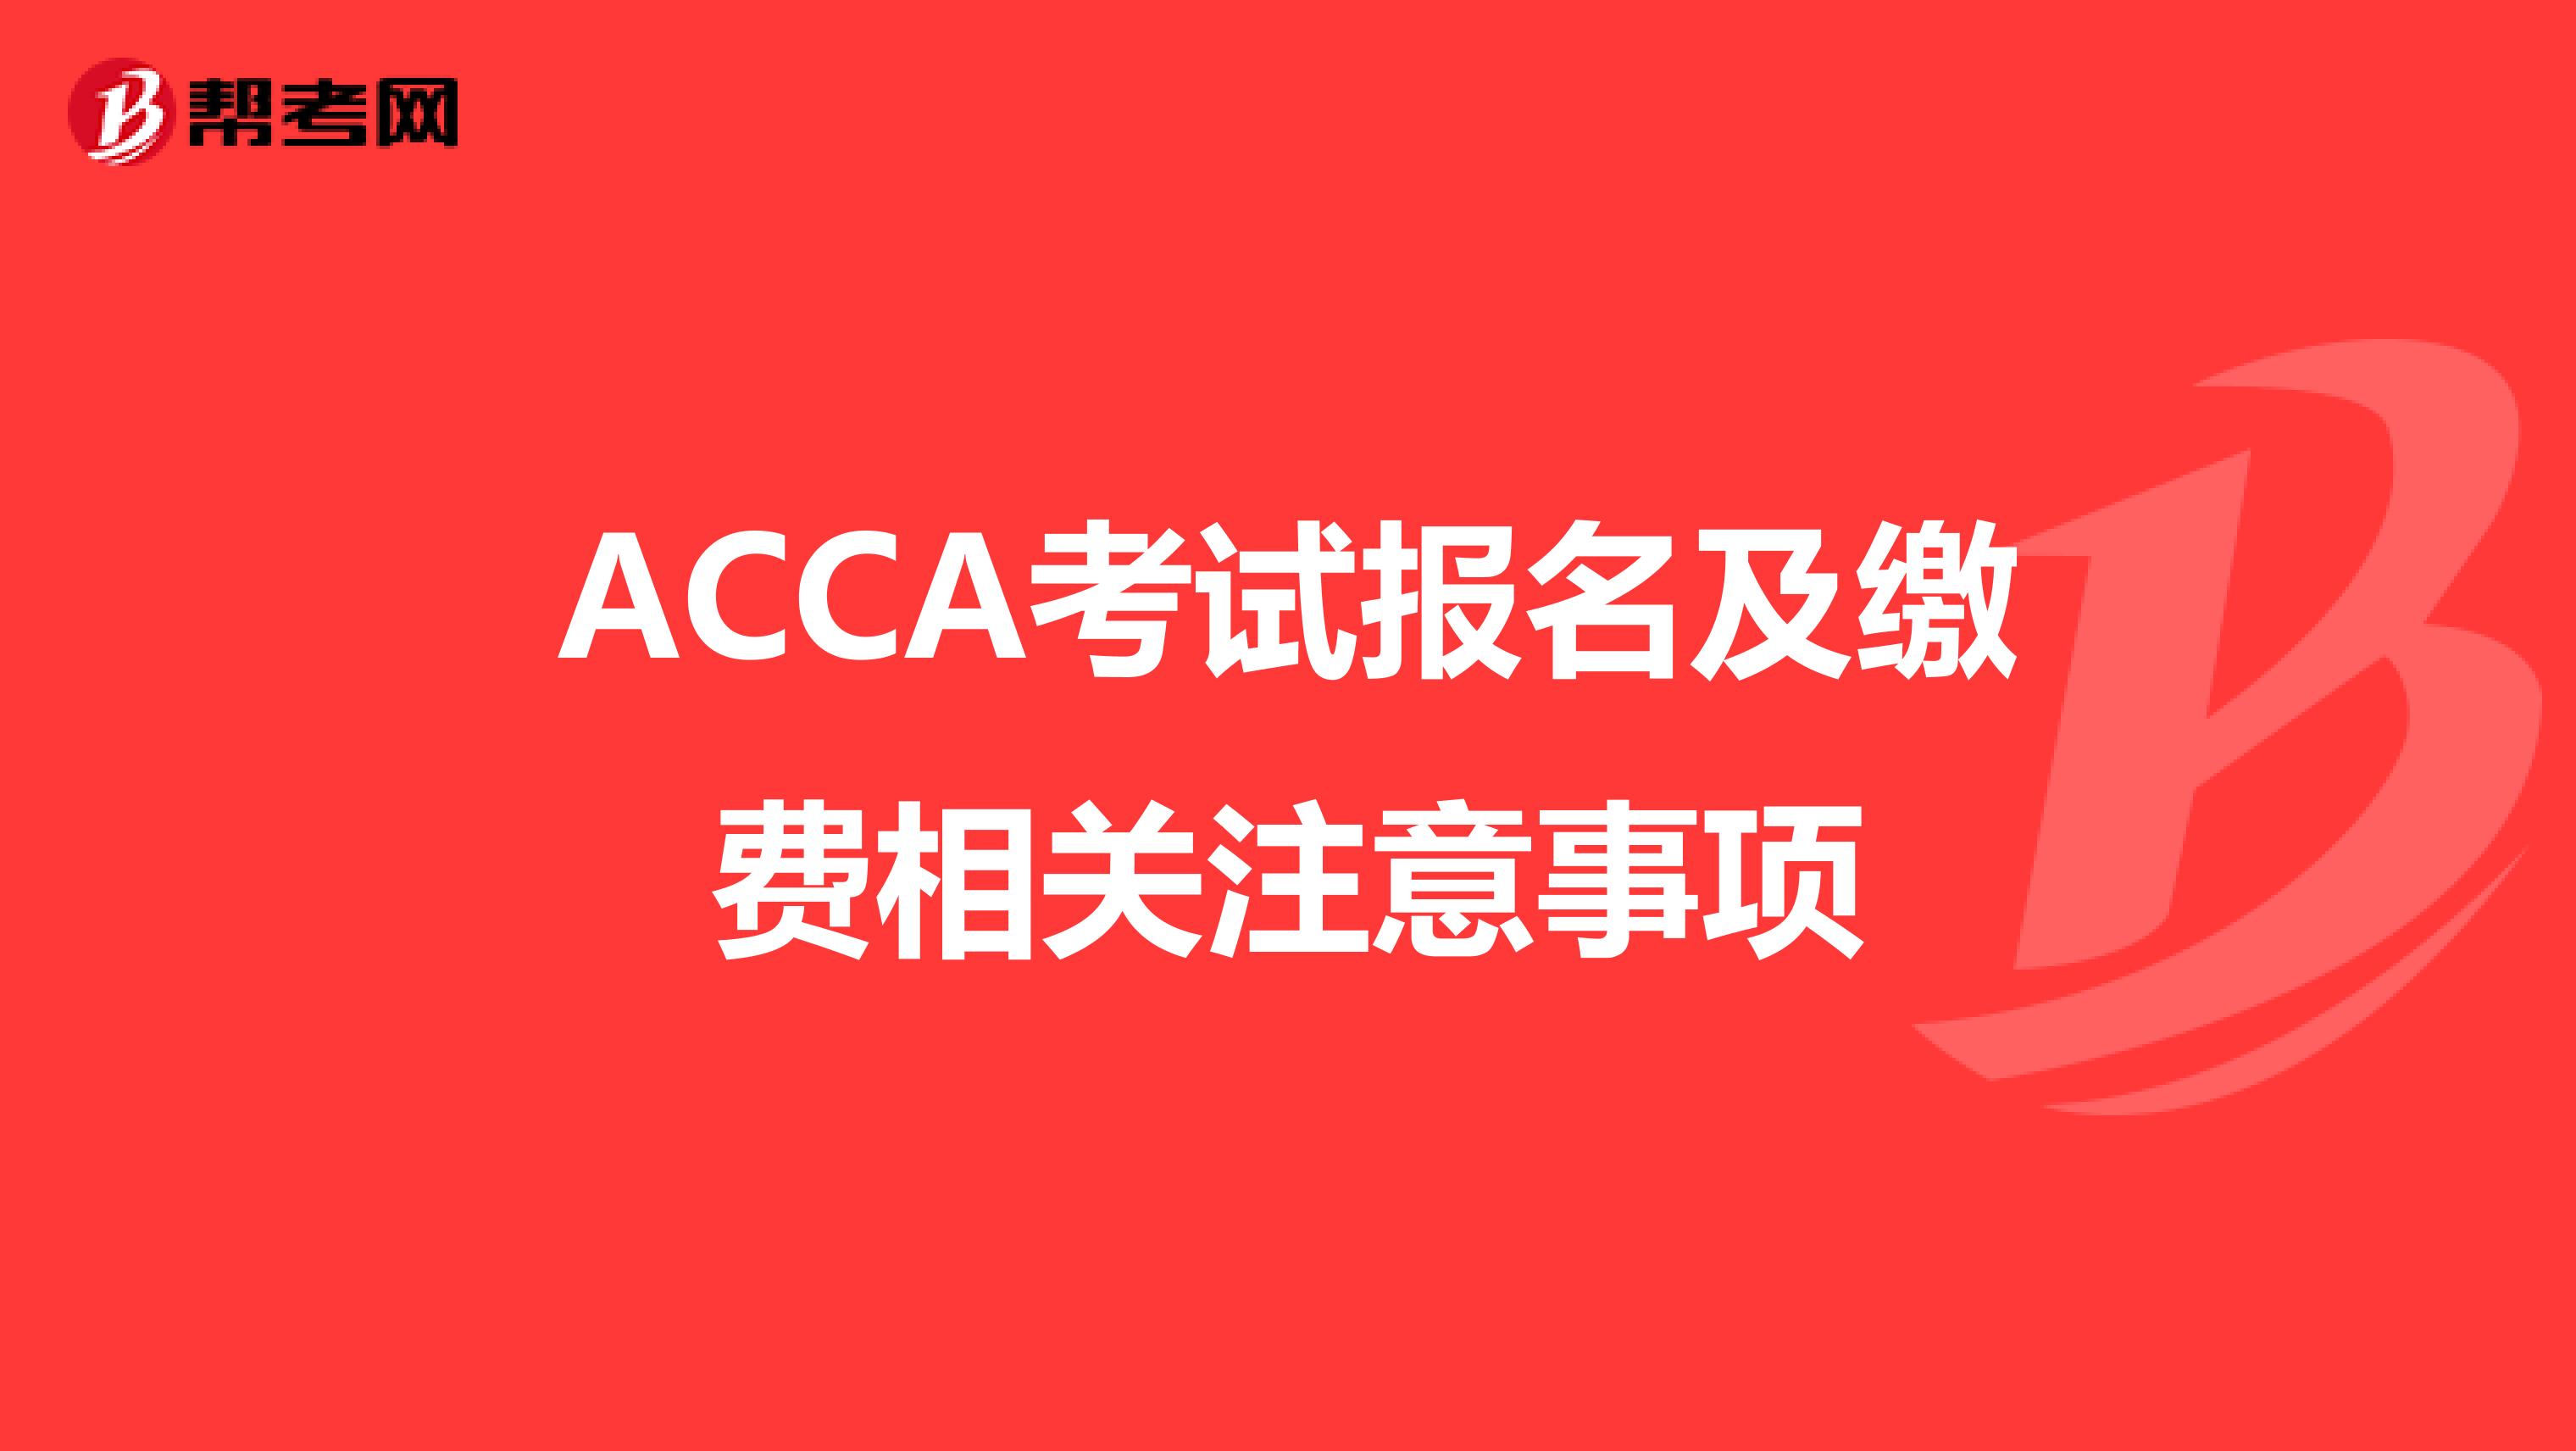 ACCA考试报名及缴费相关注意事项